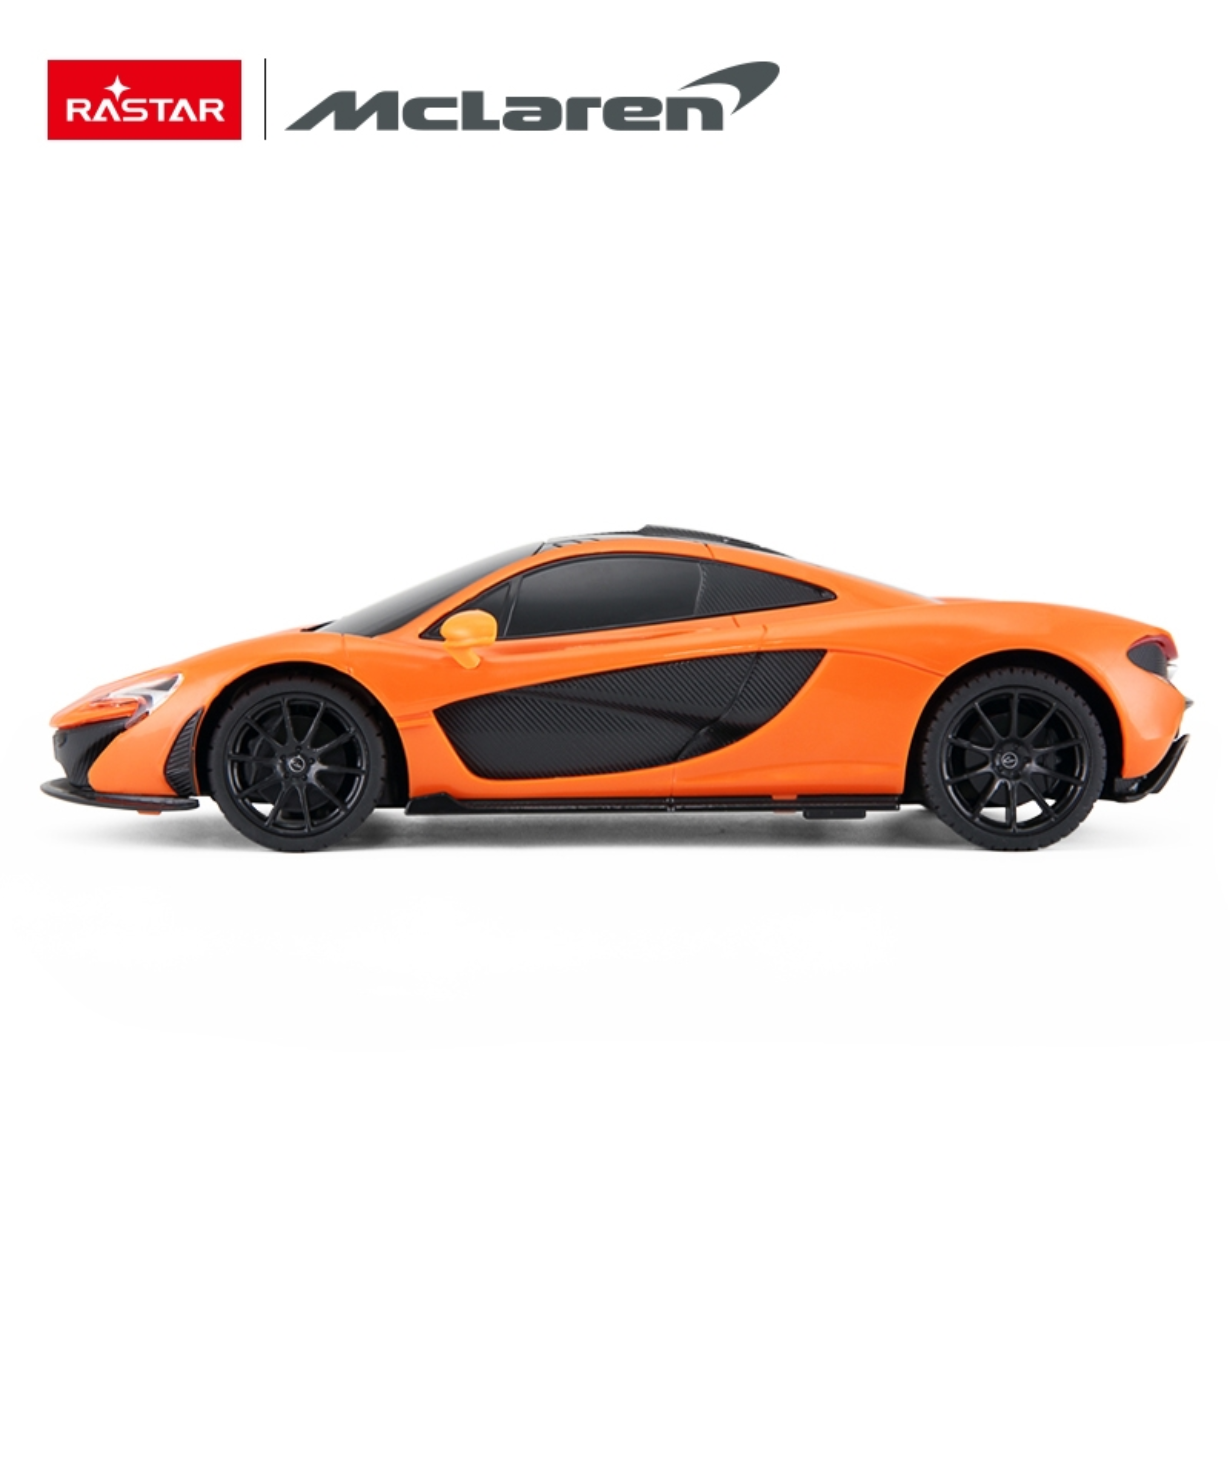 Rastar McLaren P1 Car r/c